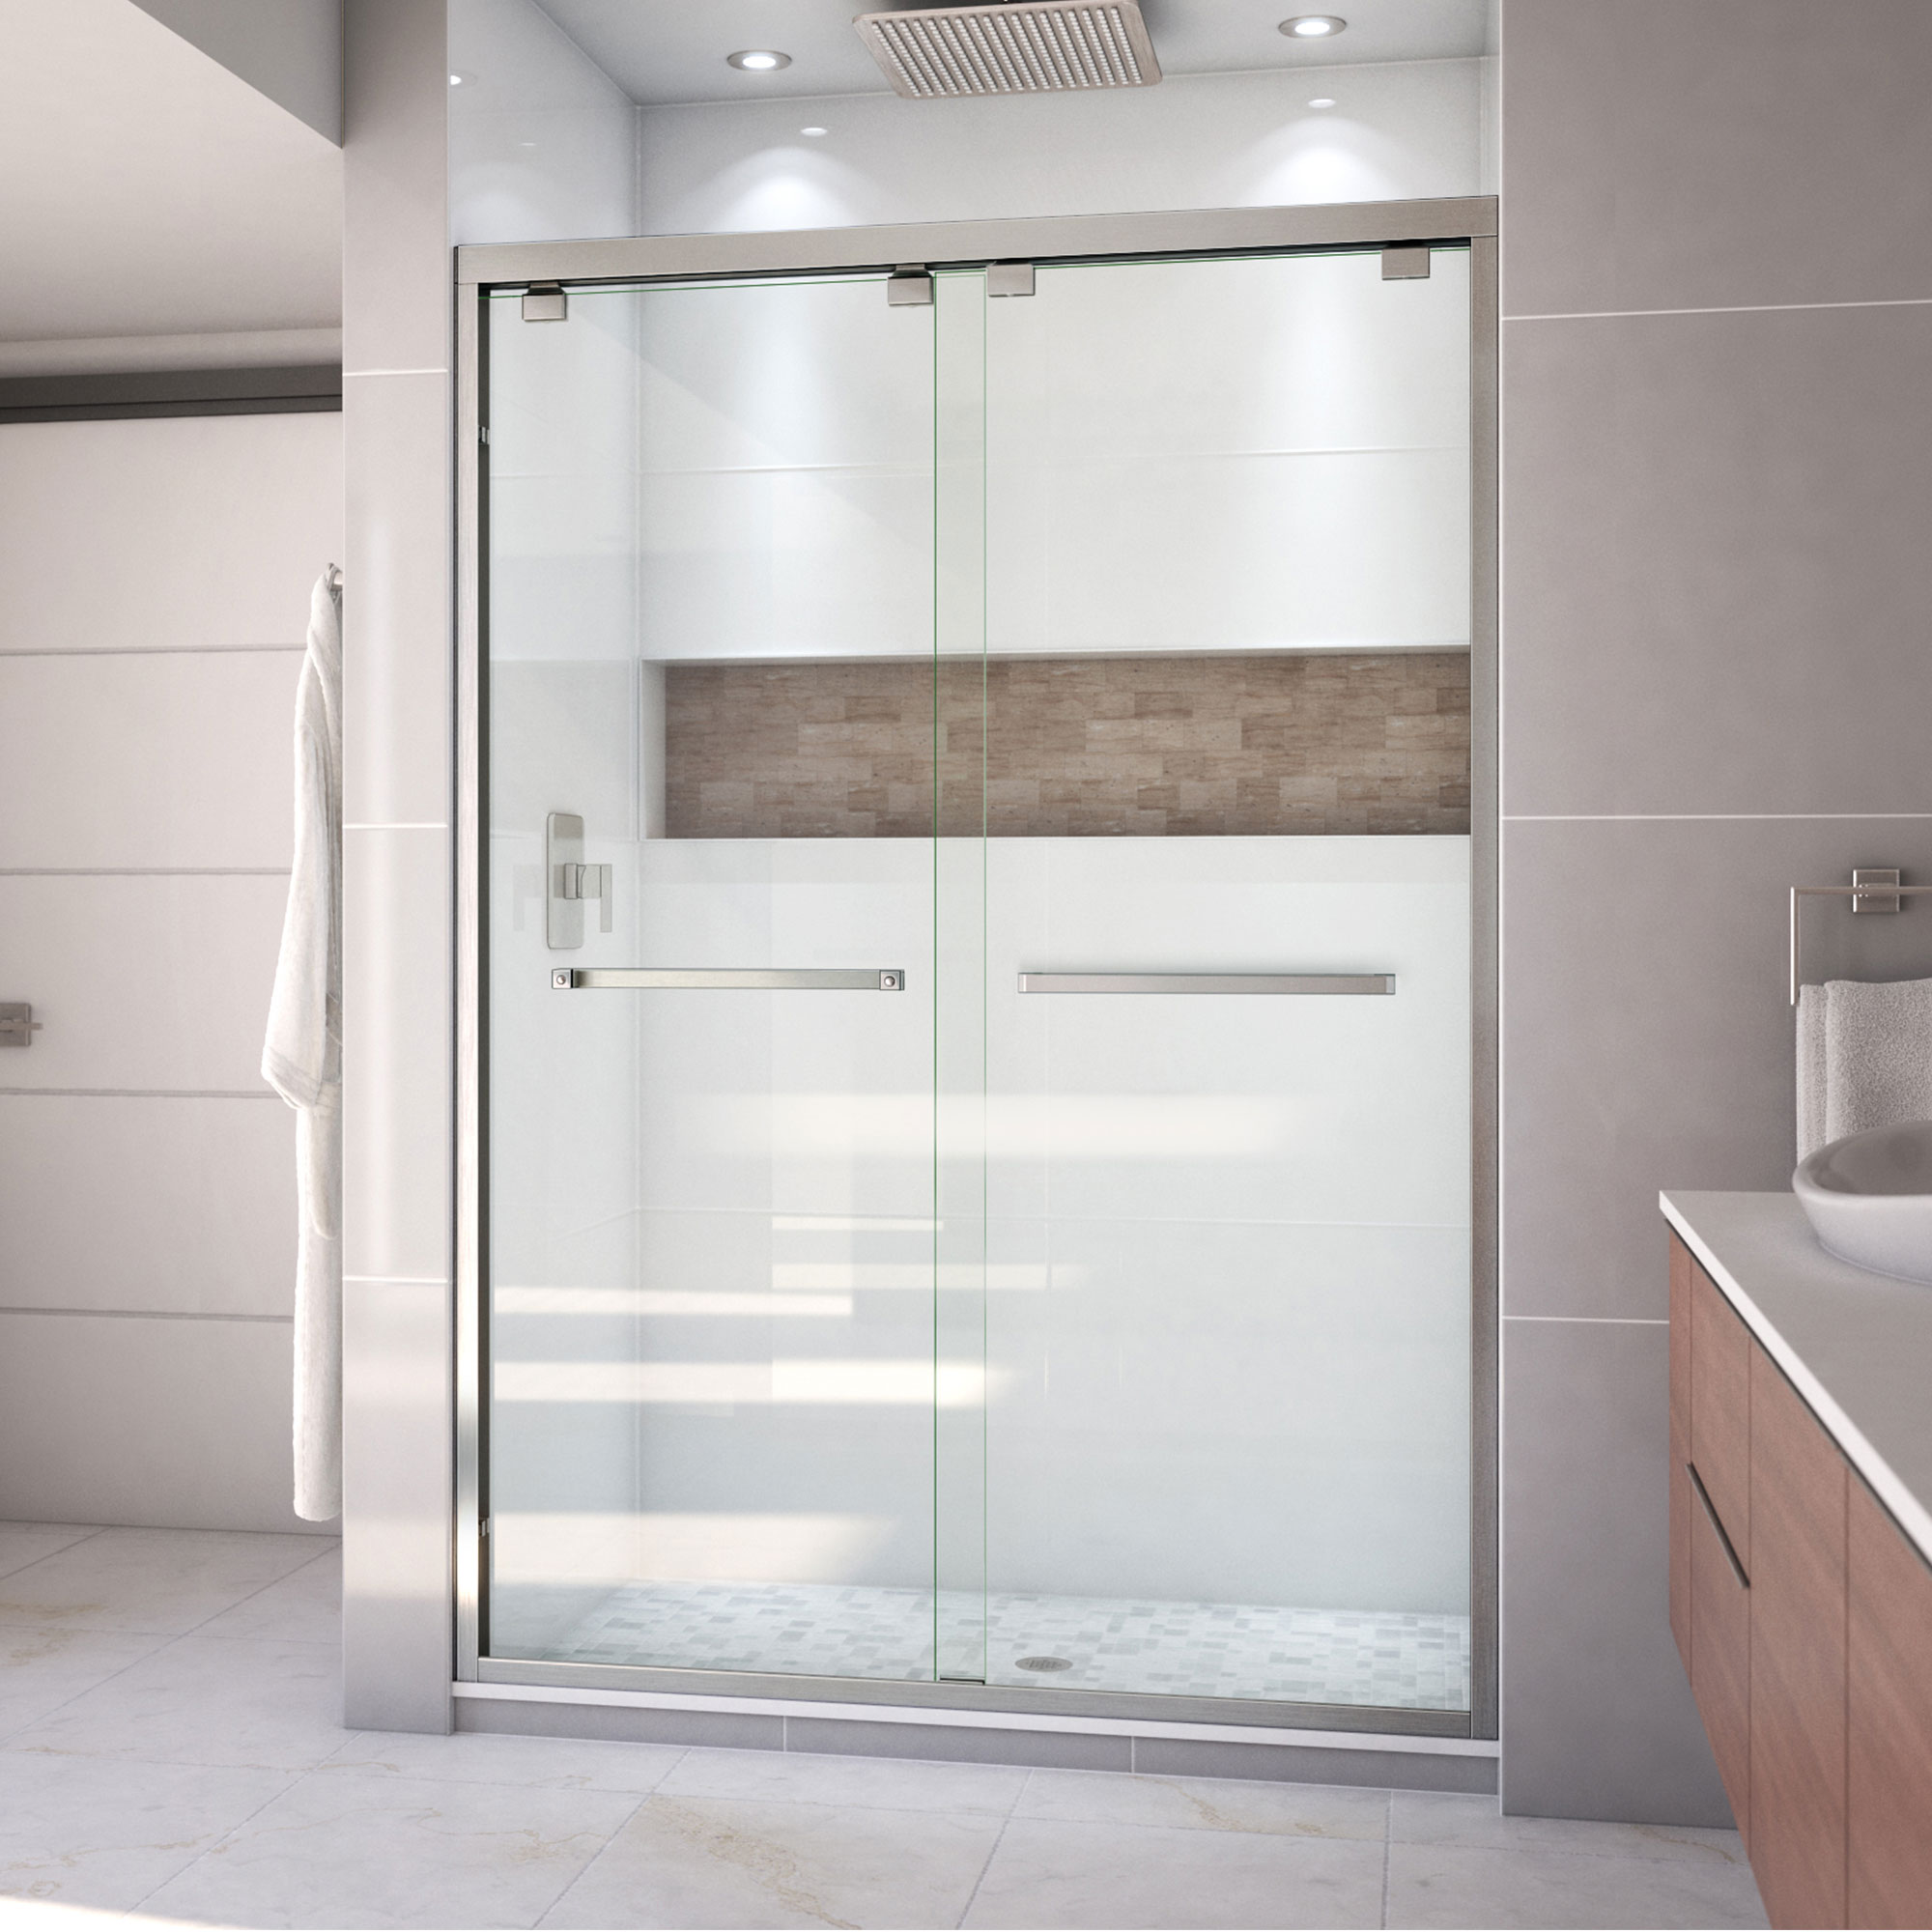 22" Chrome Towel Bar Pull Handle Frameless Shower Sliding Glass Door 